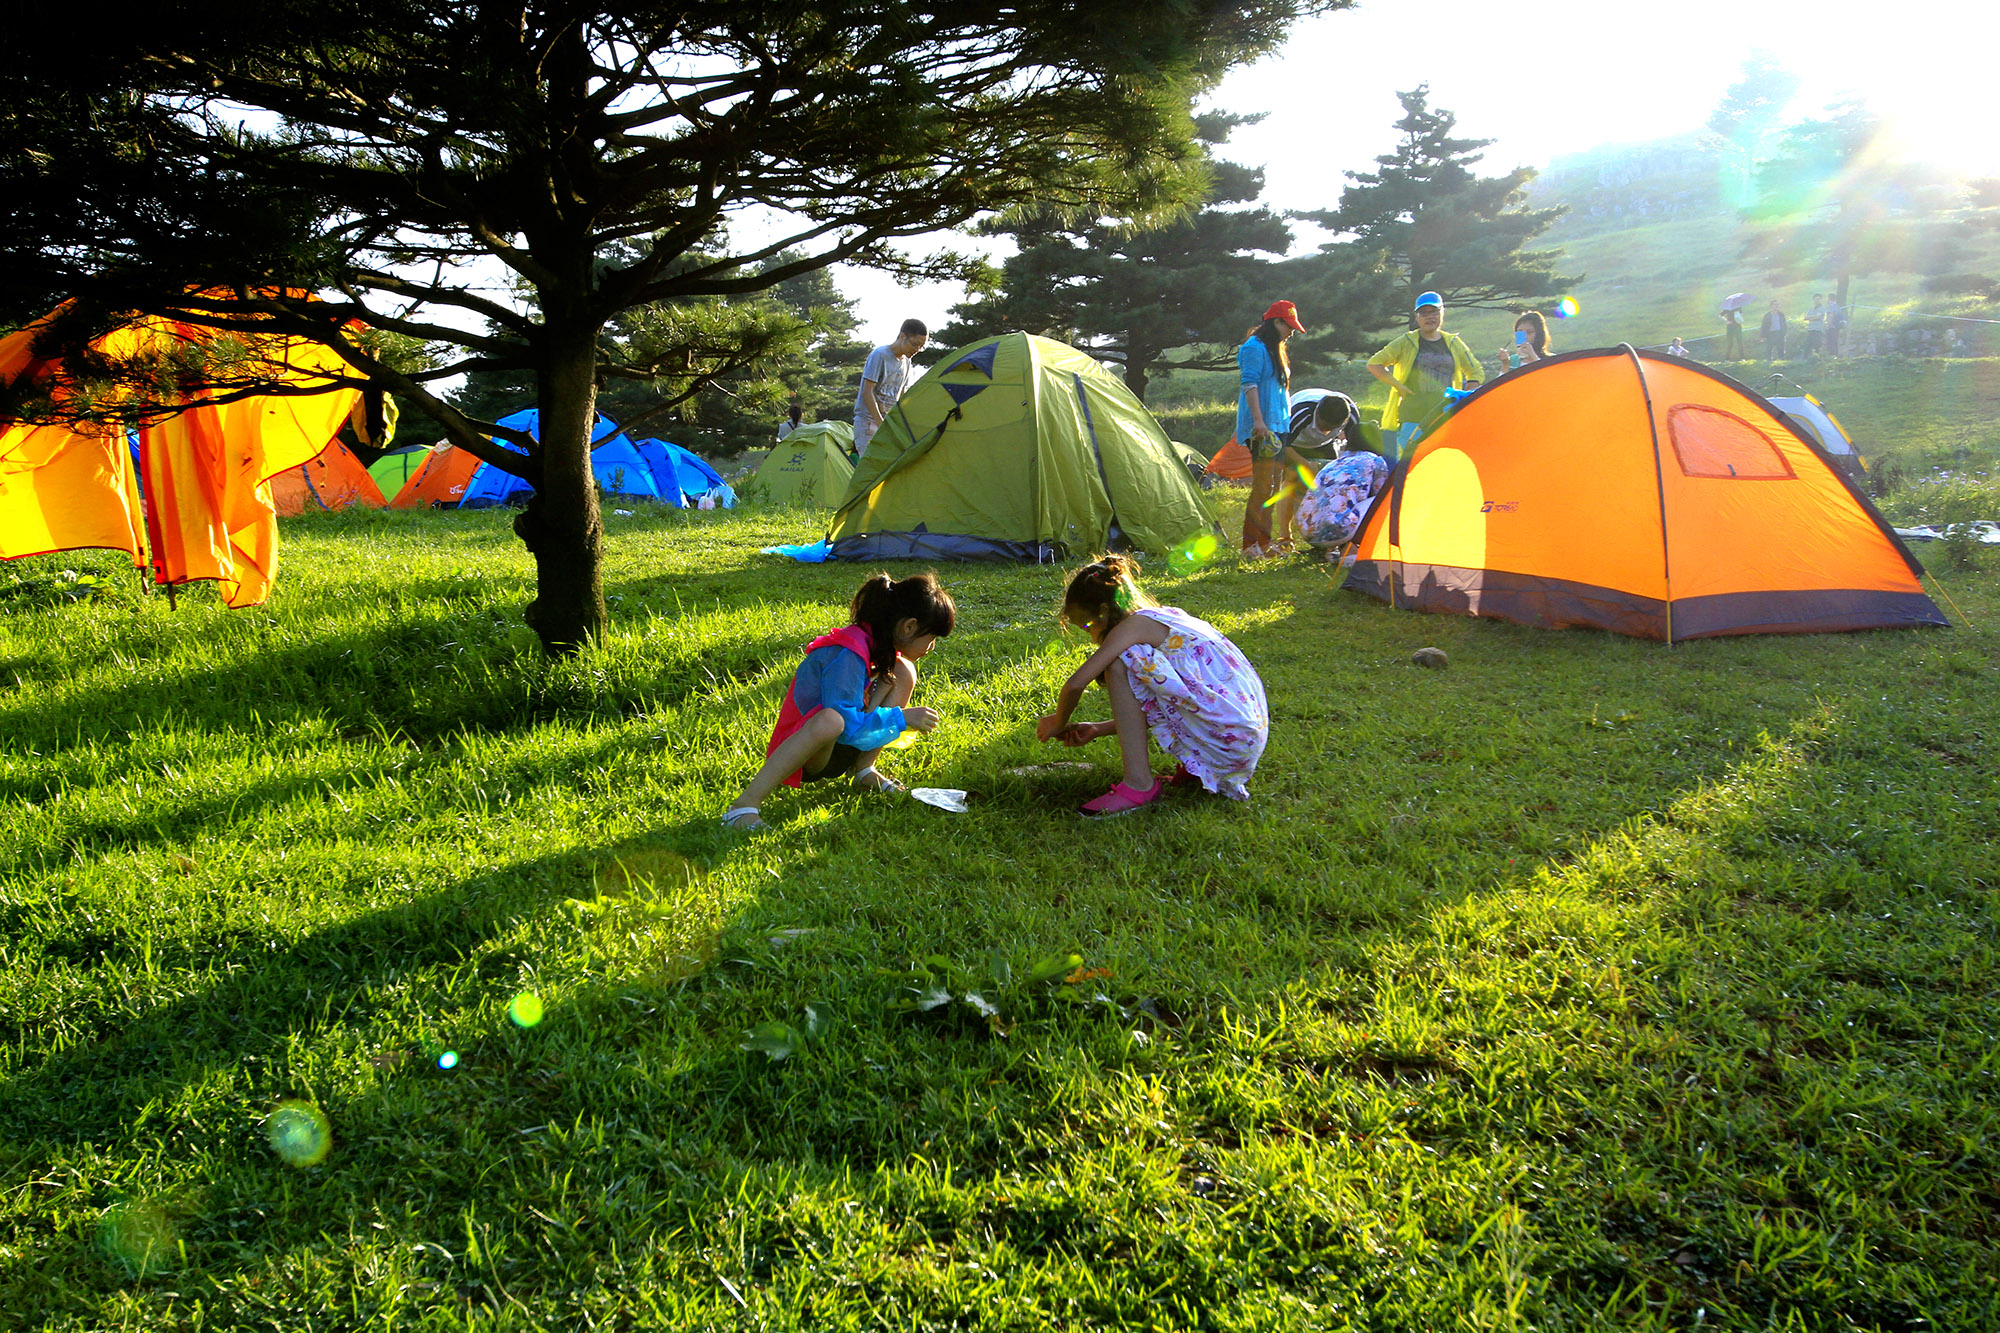 鼓浪屿户外帐篷3-4人家庭防雨多功能雨衣野外野营露营天幕帐篷-阿里巴巴